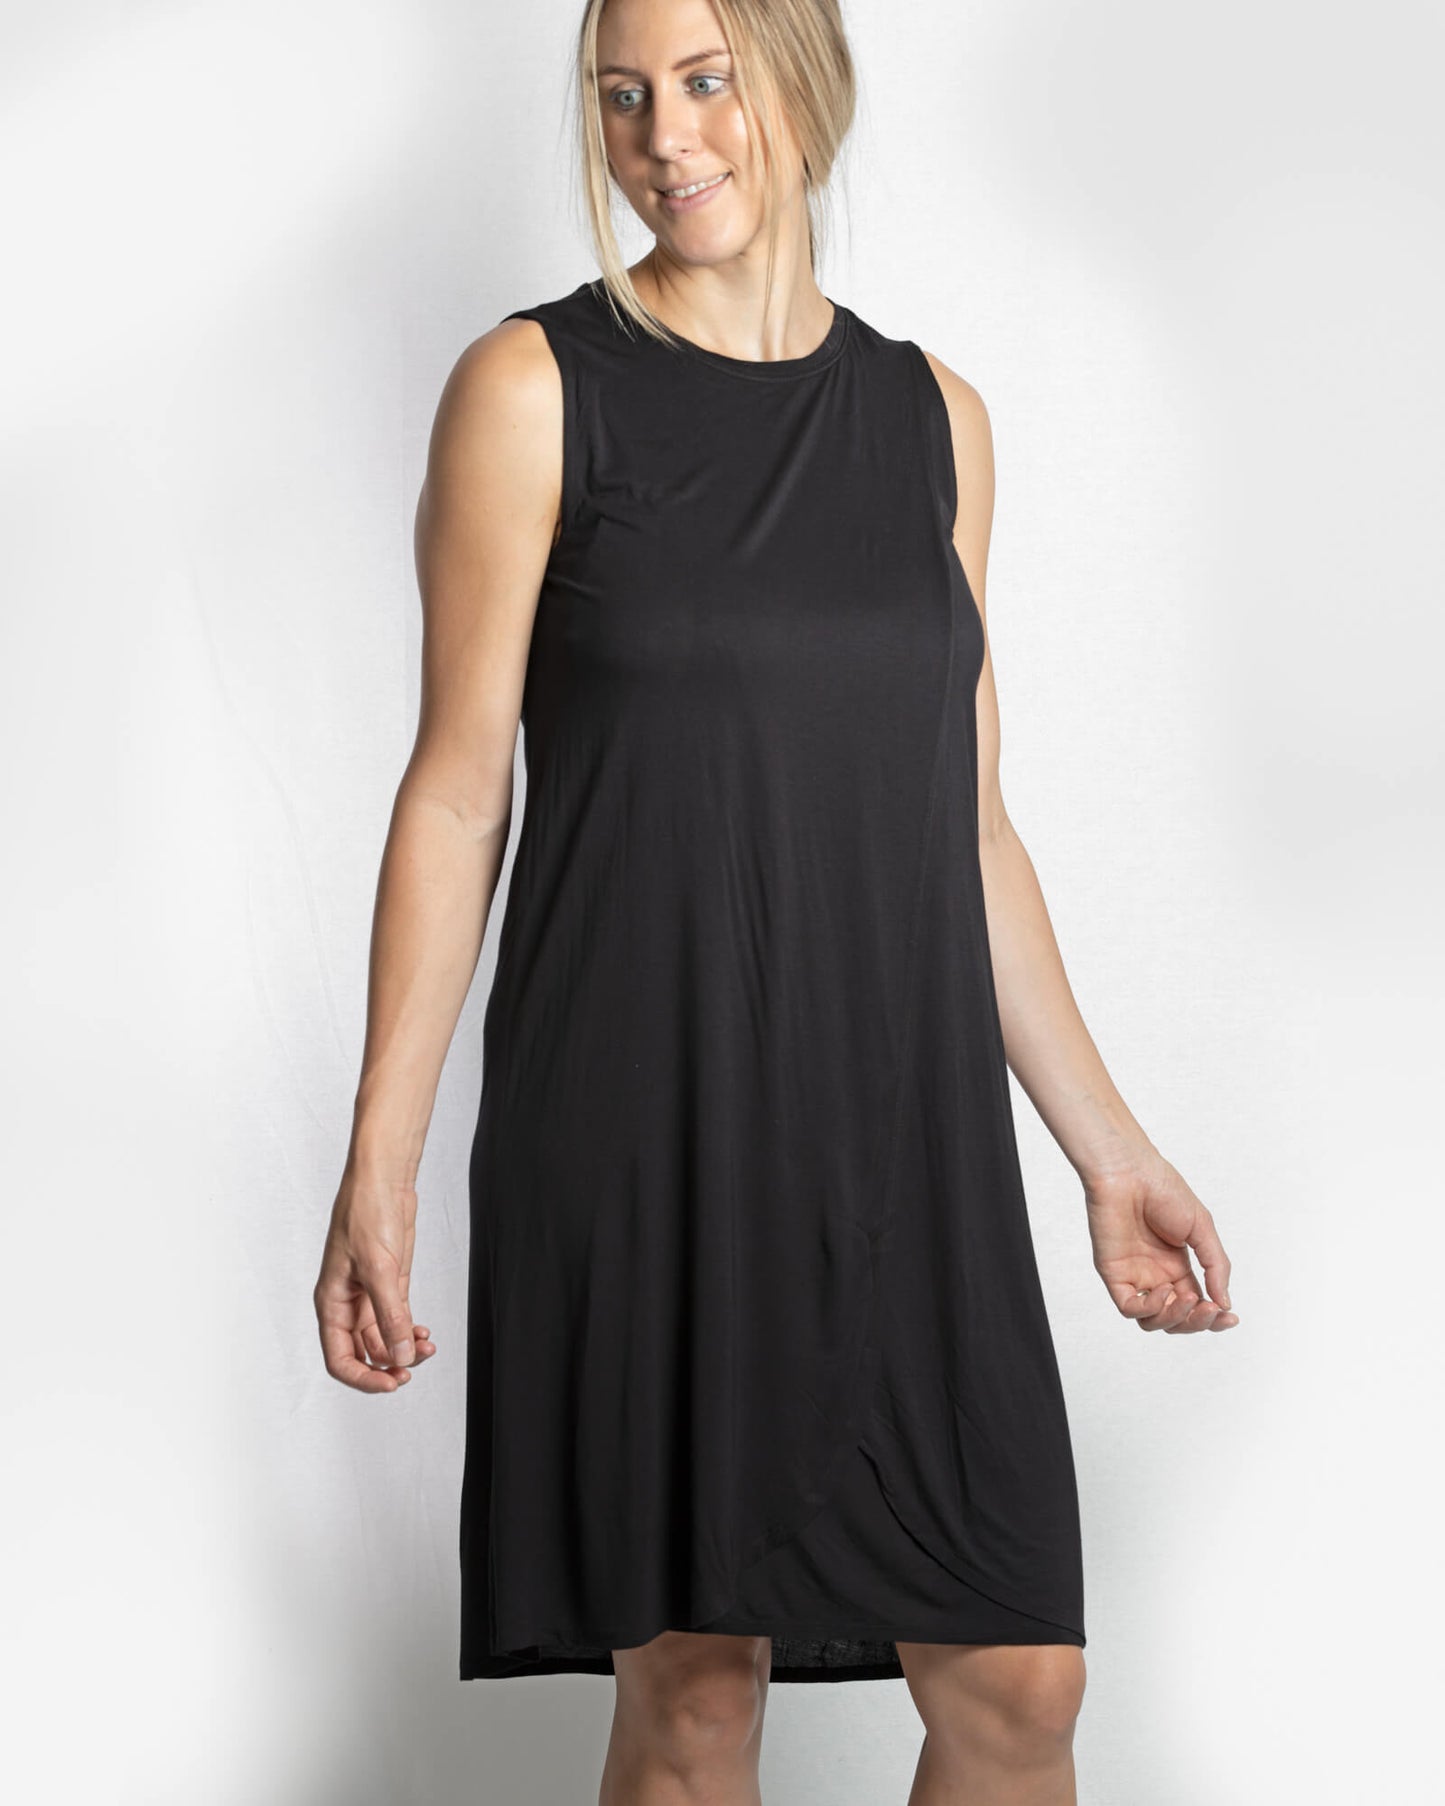 SALE Jessica Cross Over dress - Black